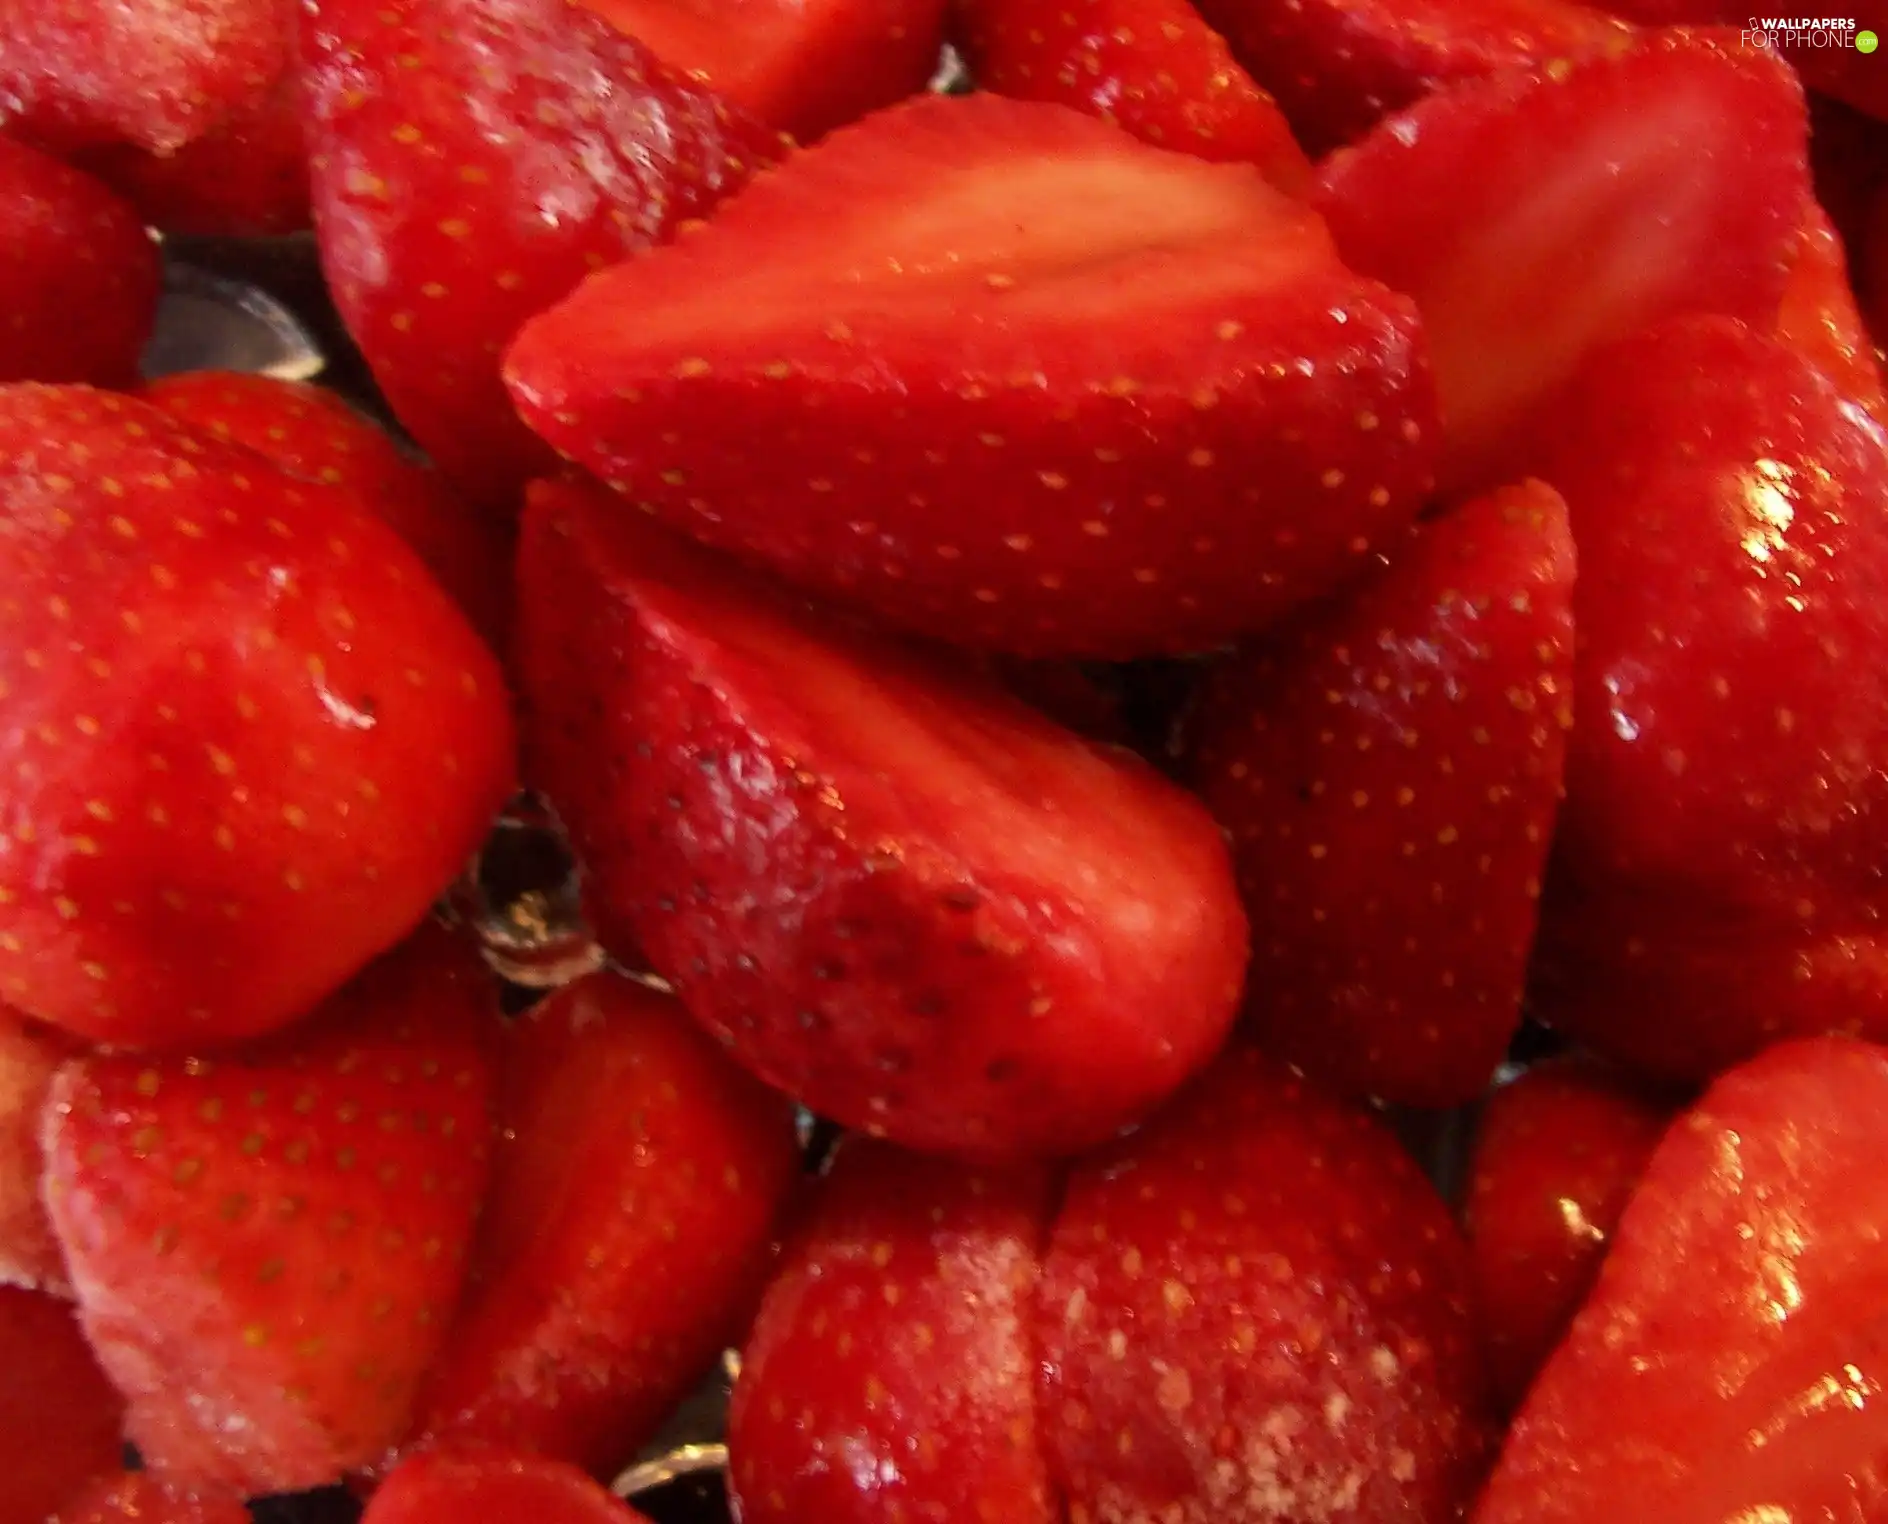 strawberries, Halves, juicy